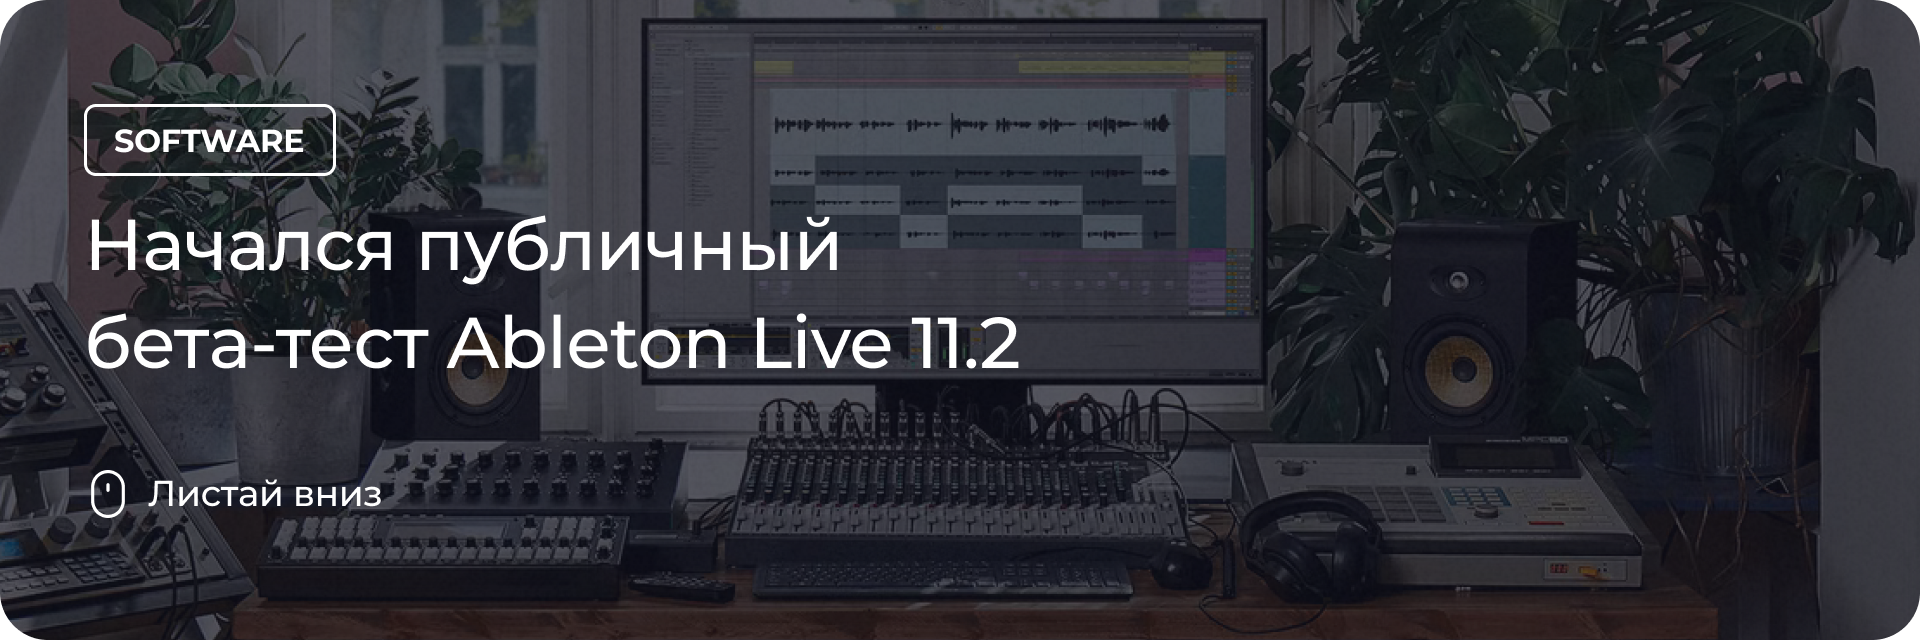 Начался публичный бета-тест Ableton Live 11.2